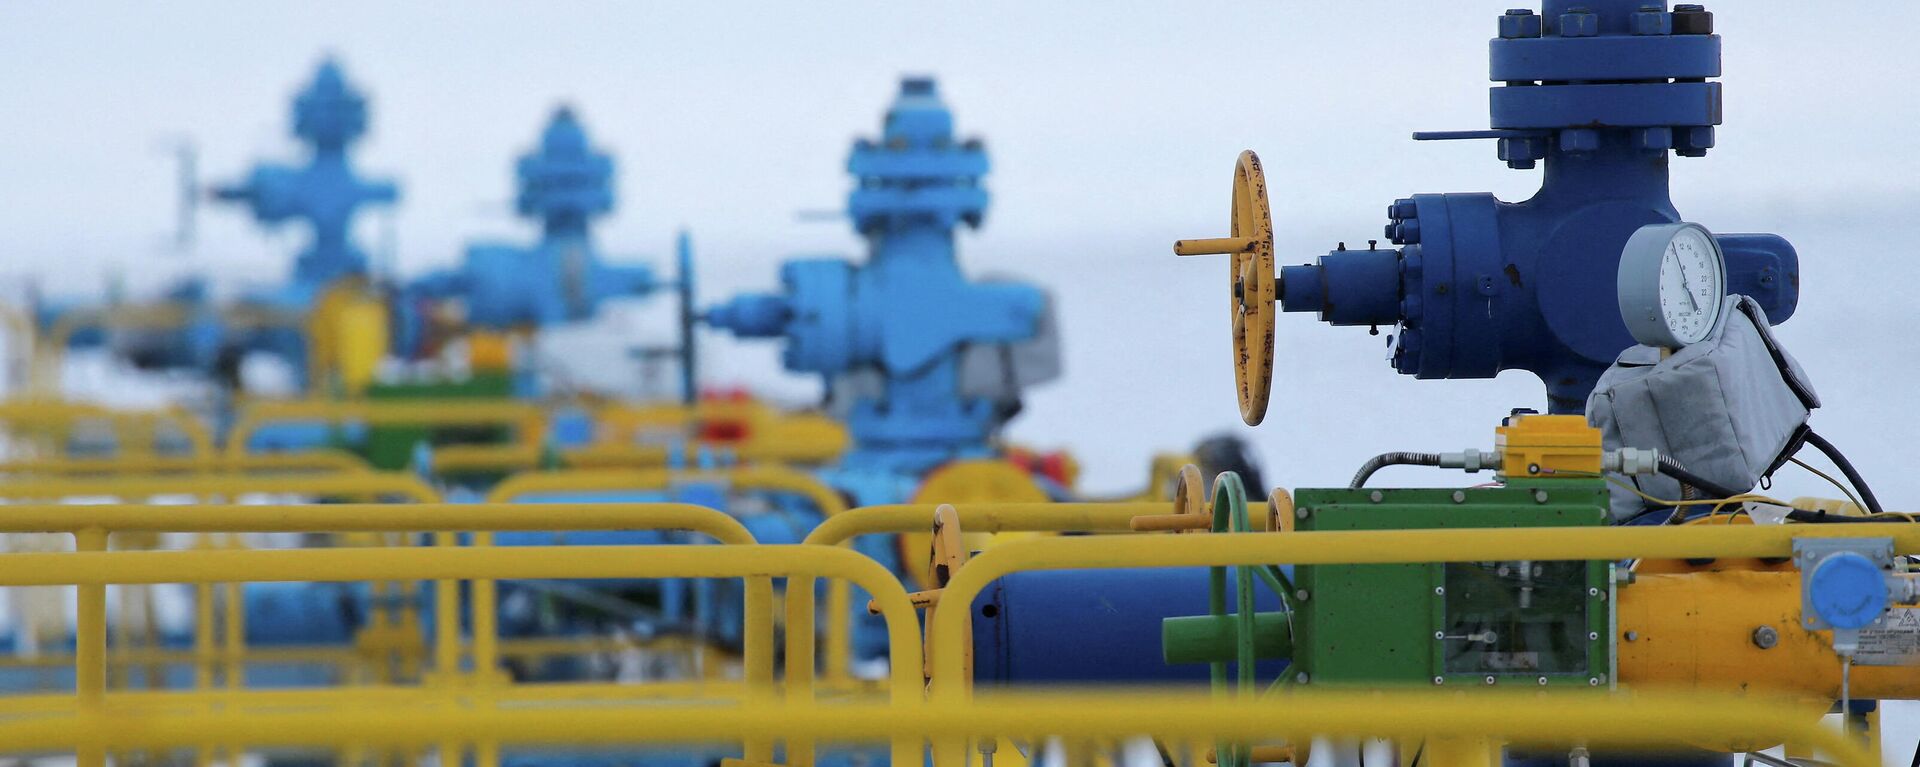 Poços de gás detido pela empresa estatal russa Gazprom no campo de gás de Bovanenkovo, Yamal, Rússia (imagem de arquivo) - Sputnik Brasil, 1920, 25.12.2021